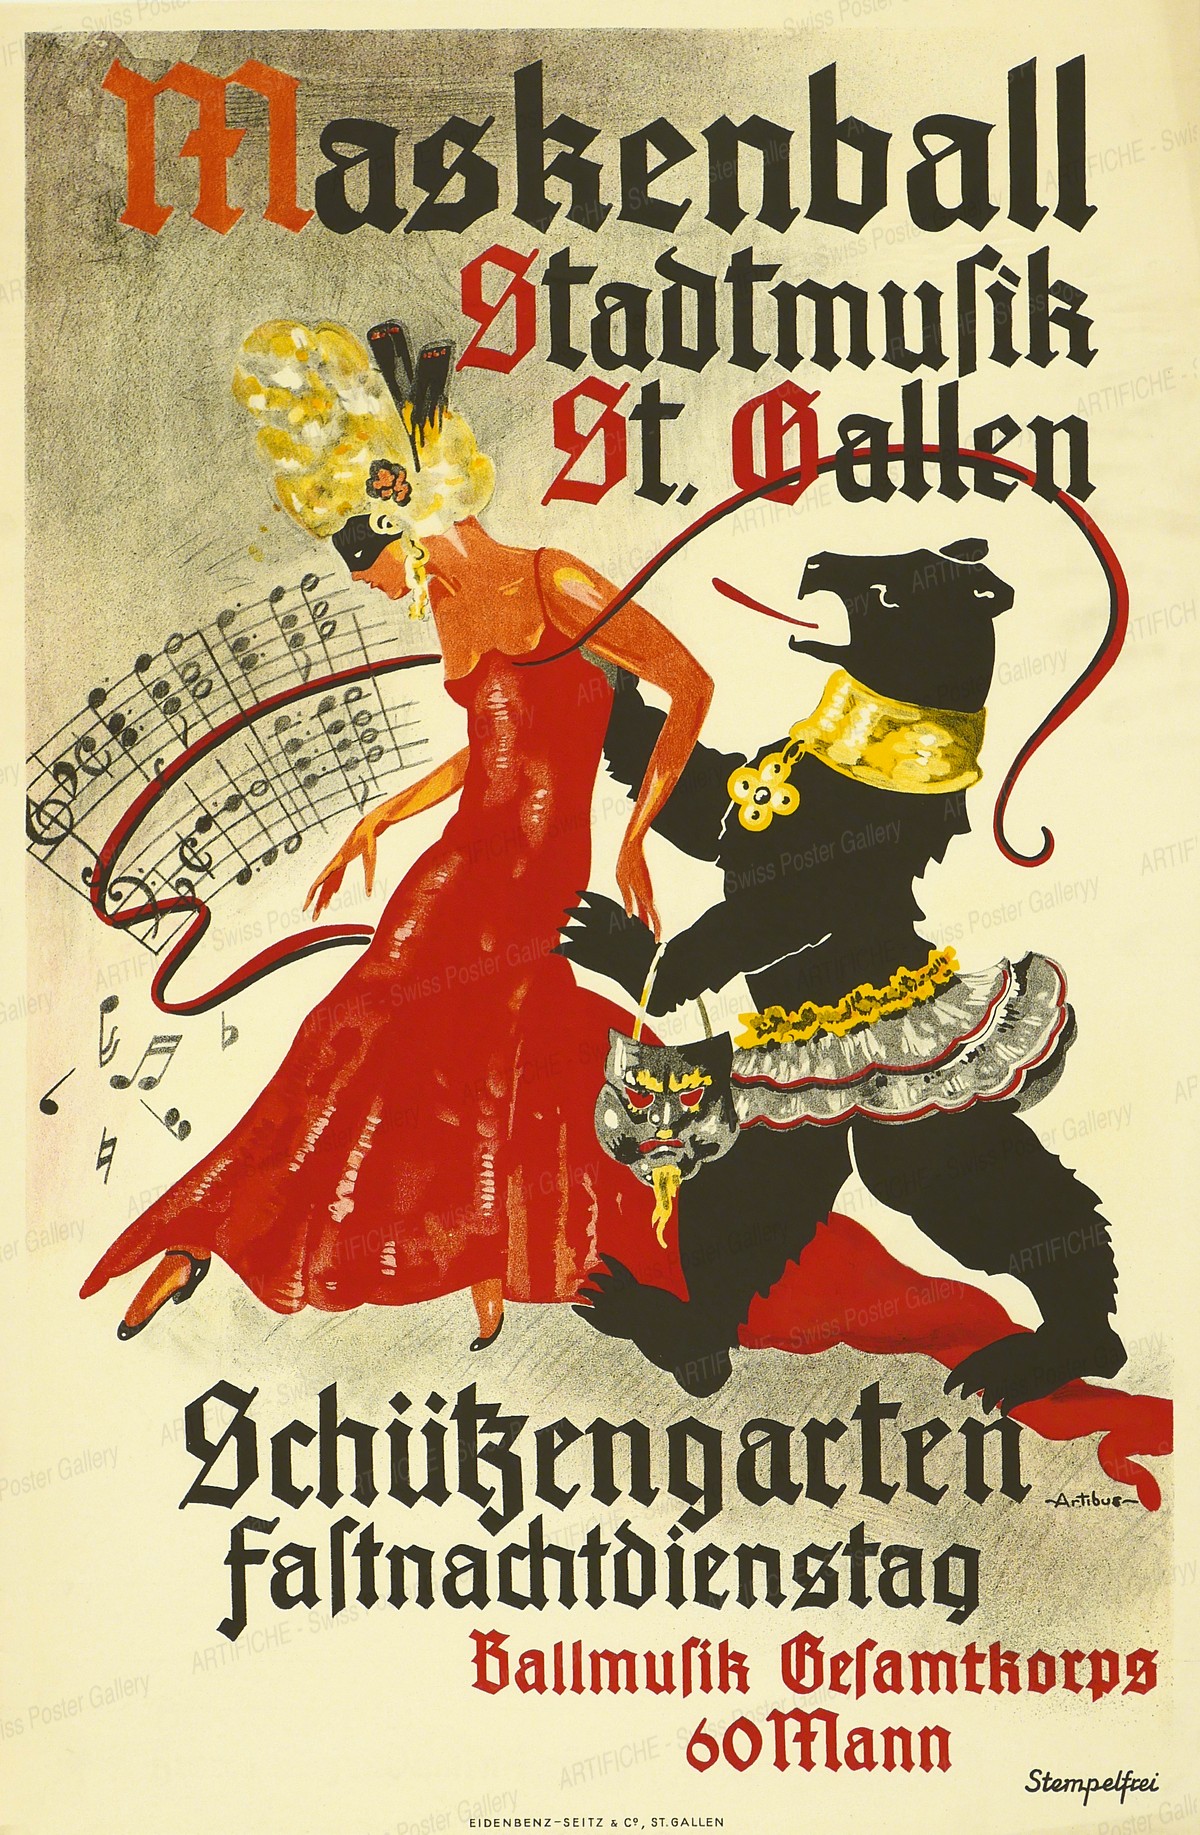 Maskenball Stadtmusik St. Gallen – Schützengarten Fastnachtsdienstag